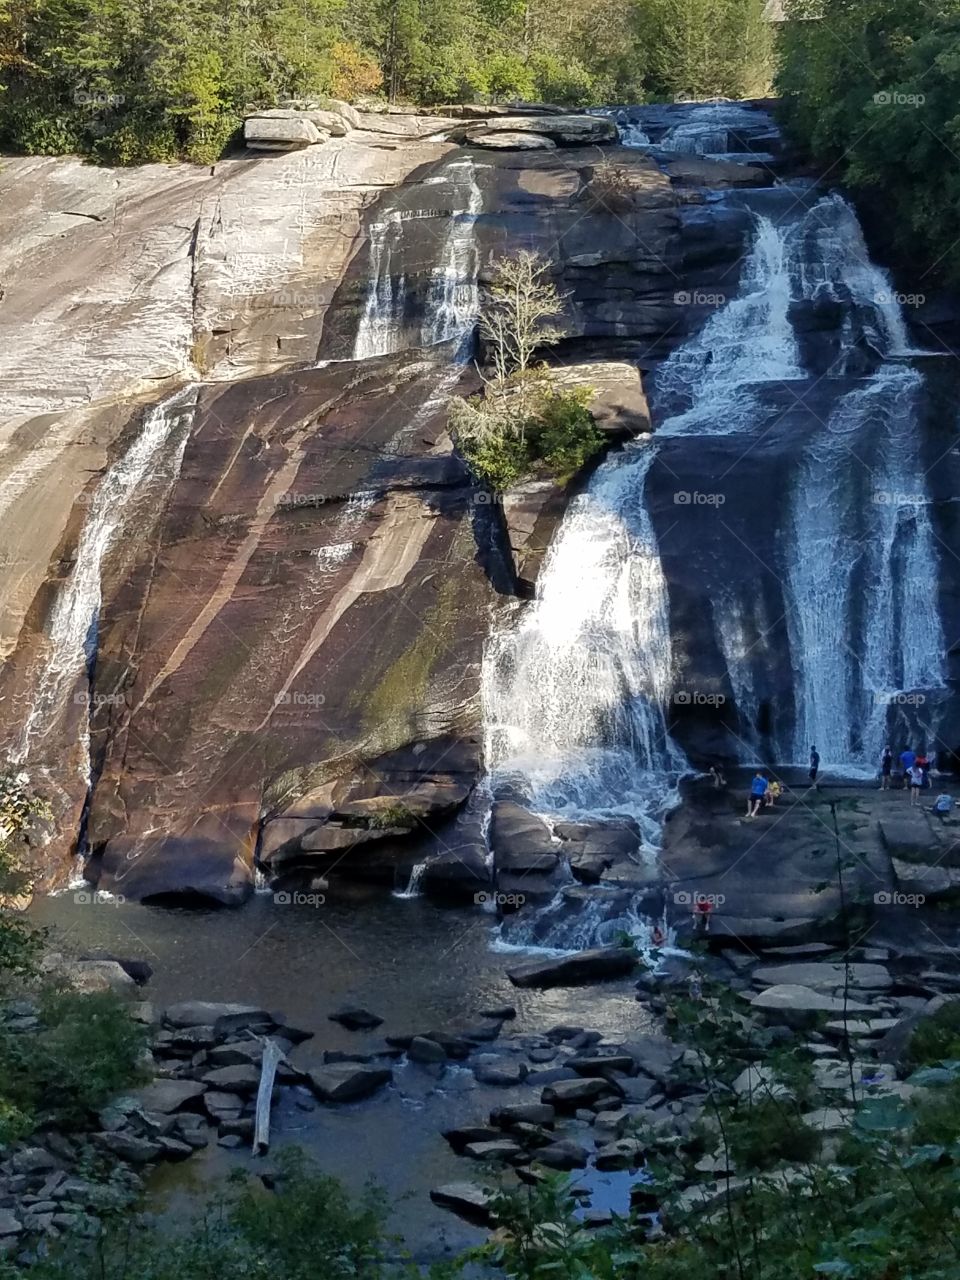 NC, waterfall